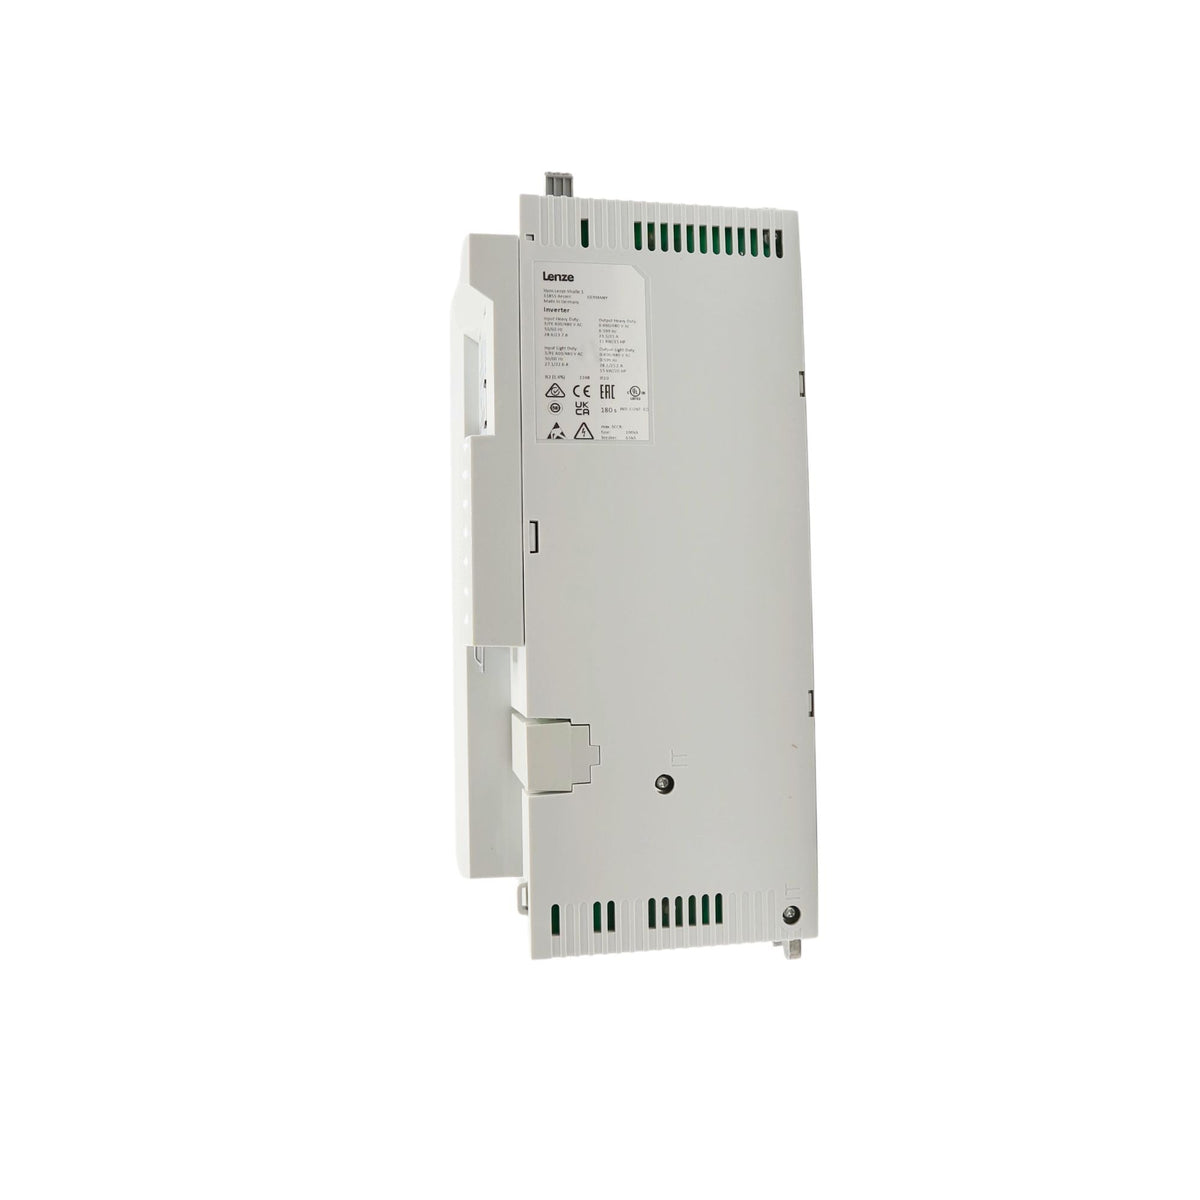 Lenze | i510 15hp Cabinet mount 480volt 5digital inputs, 2 analog inputs, 1 digital output 1 analog Output, 1 relay | I51BE311F10V11000S - side view